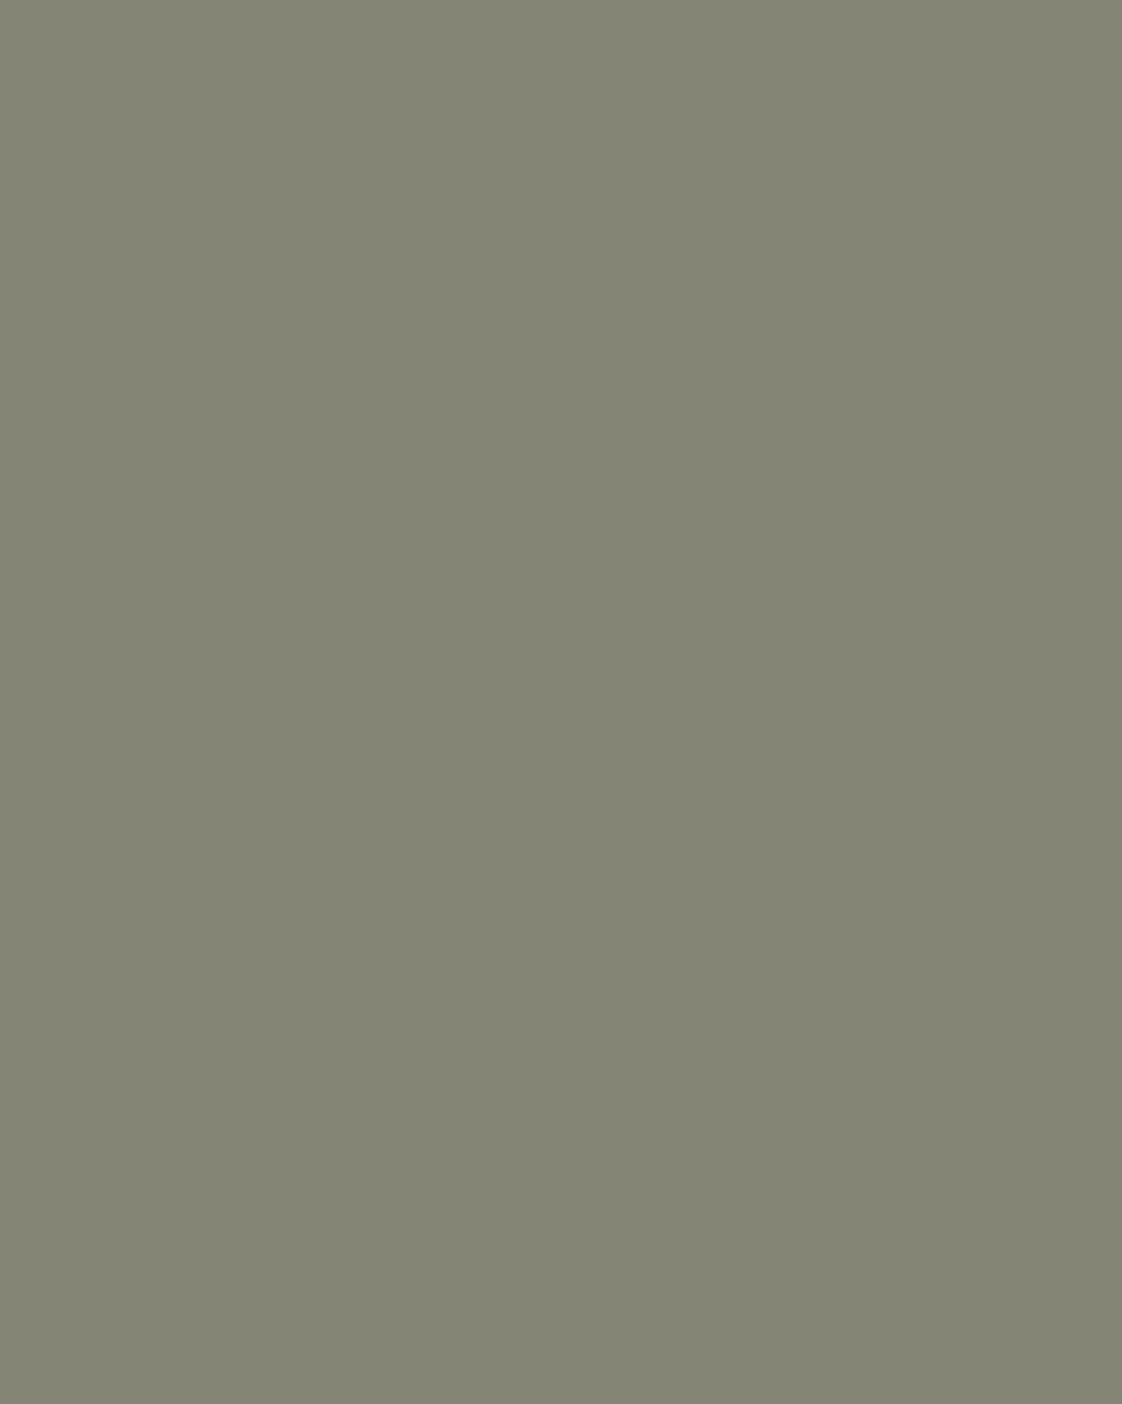 Дионисий. Преподобный Кирилл Белозерский. Конец XV — начало XVI века. Государственный Русский музей, Санкт-Петербург